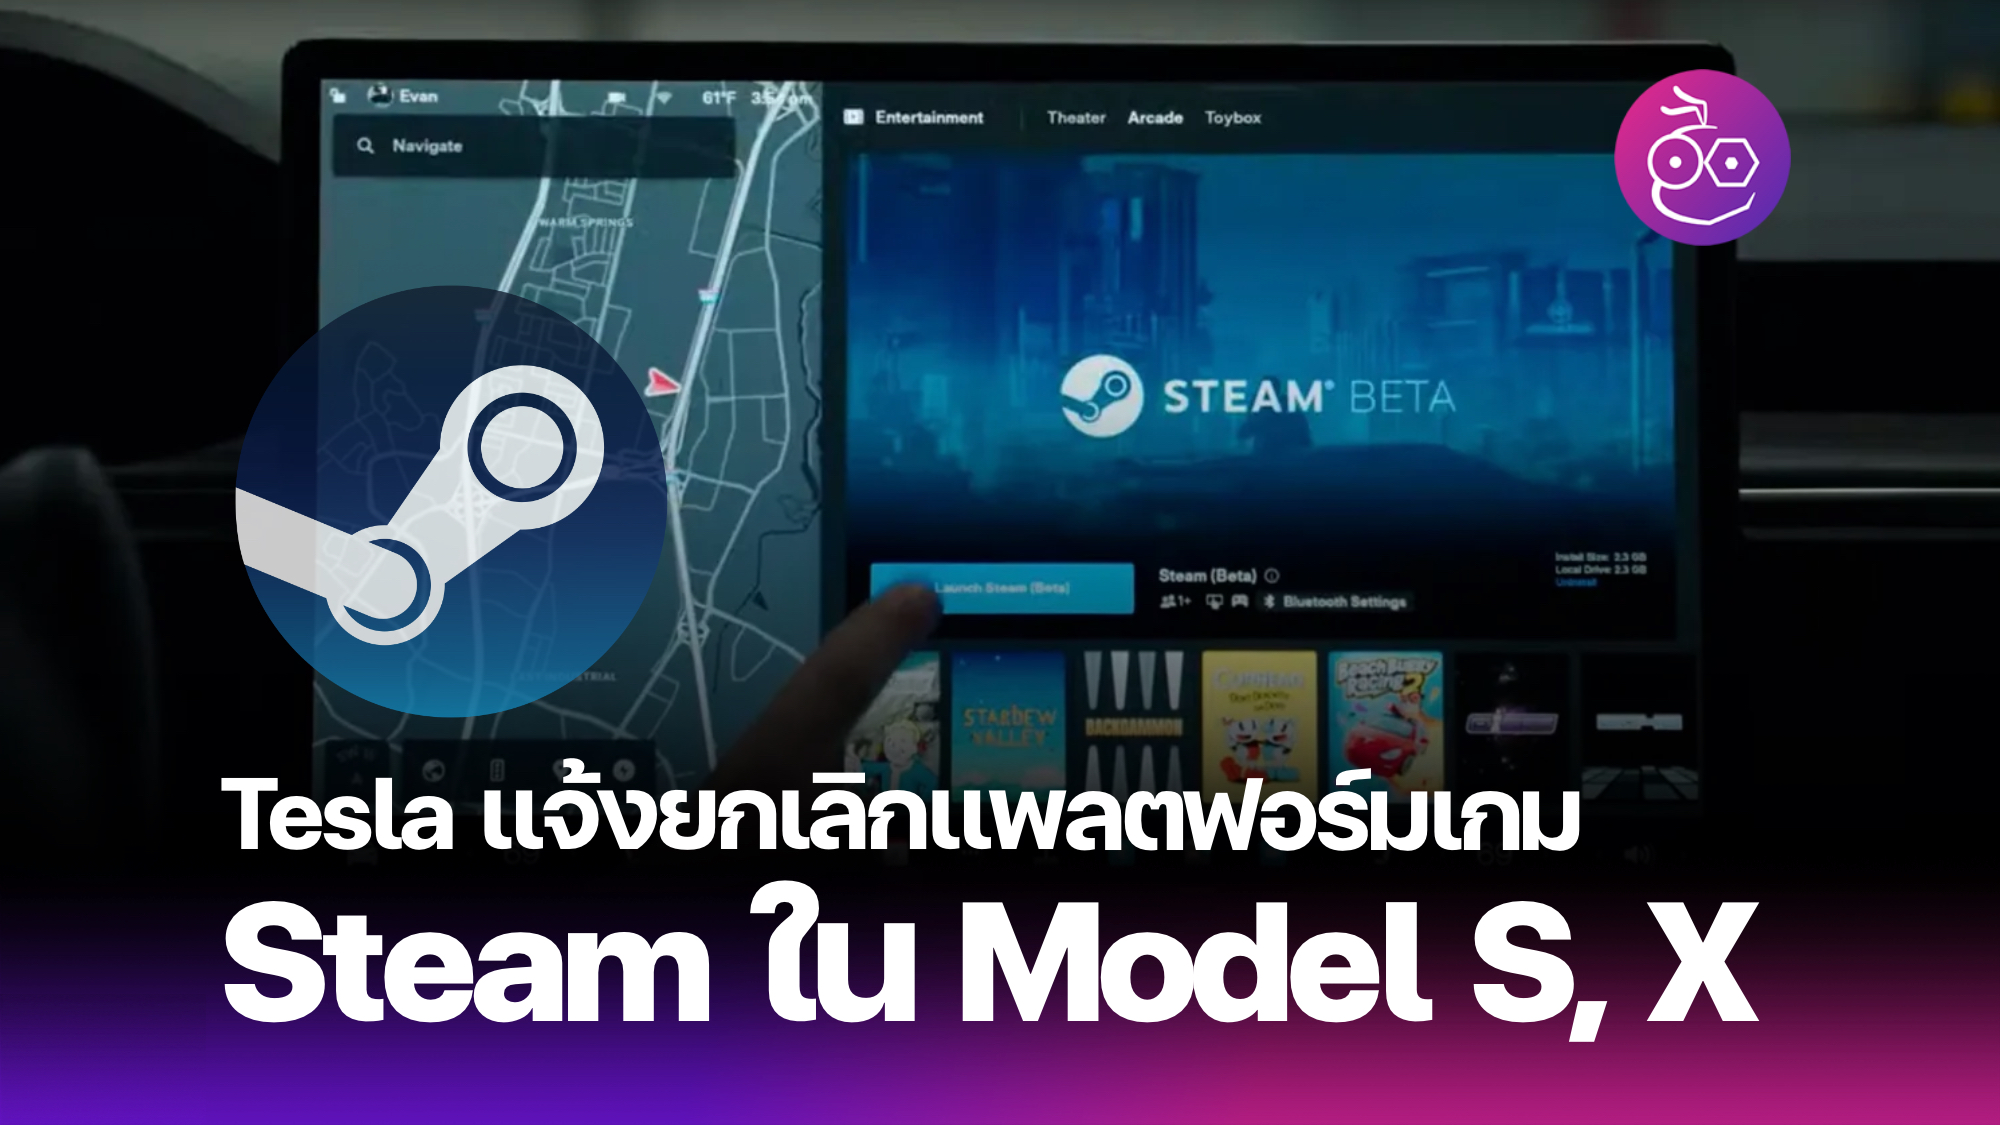 特斯拉取消了 Model S 和 Model 的 Steam 游戏